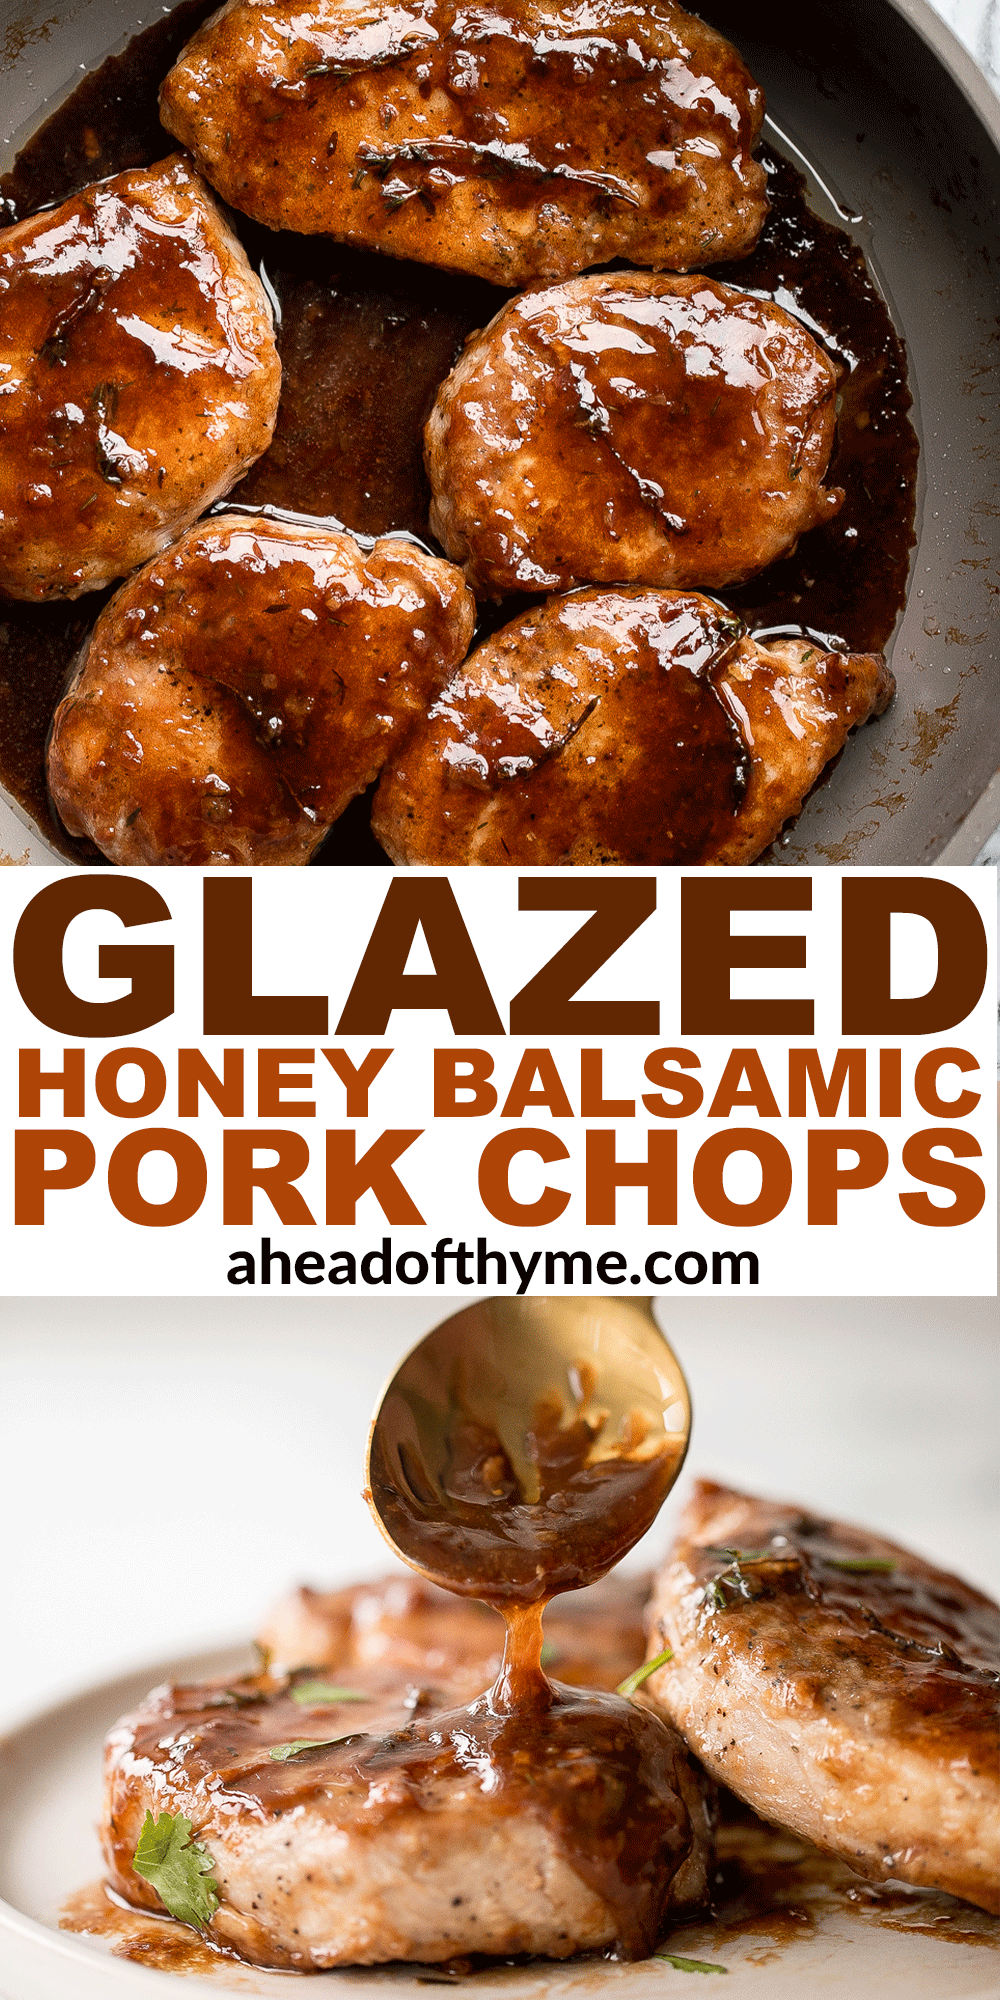 Glazed Honey Balsamic Pork Chops